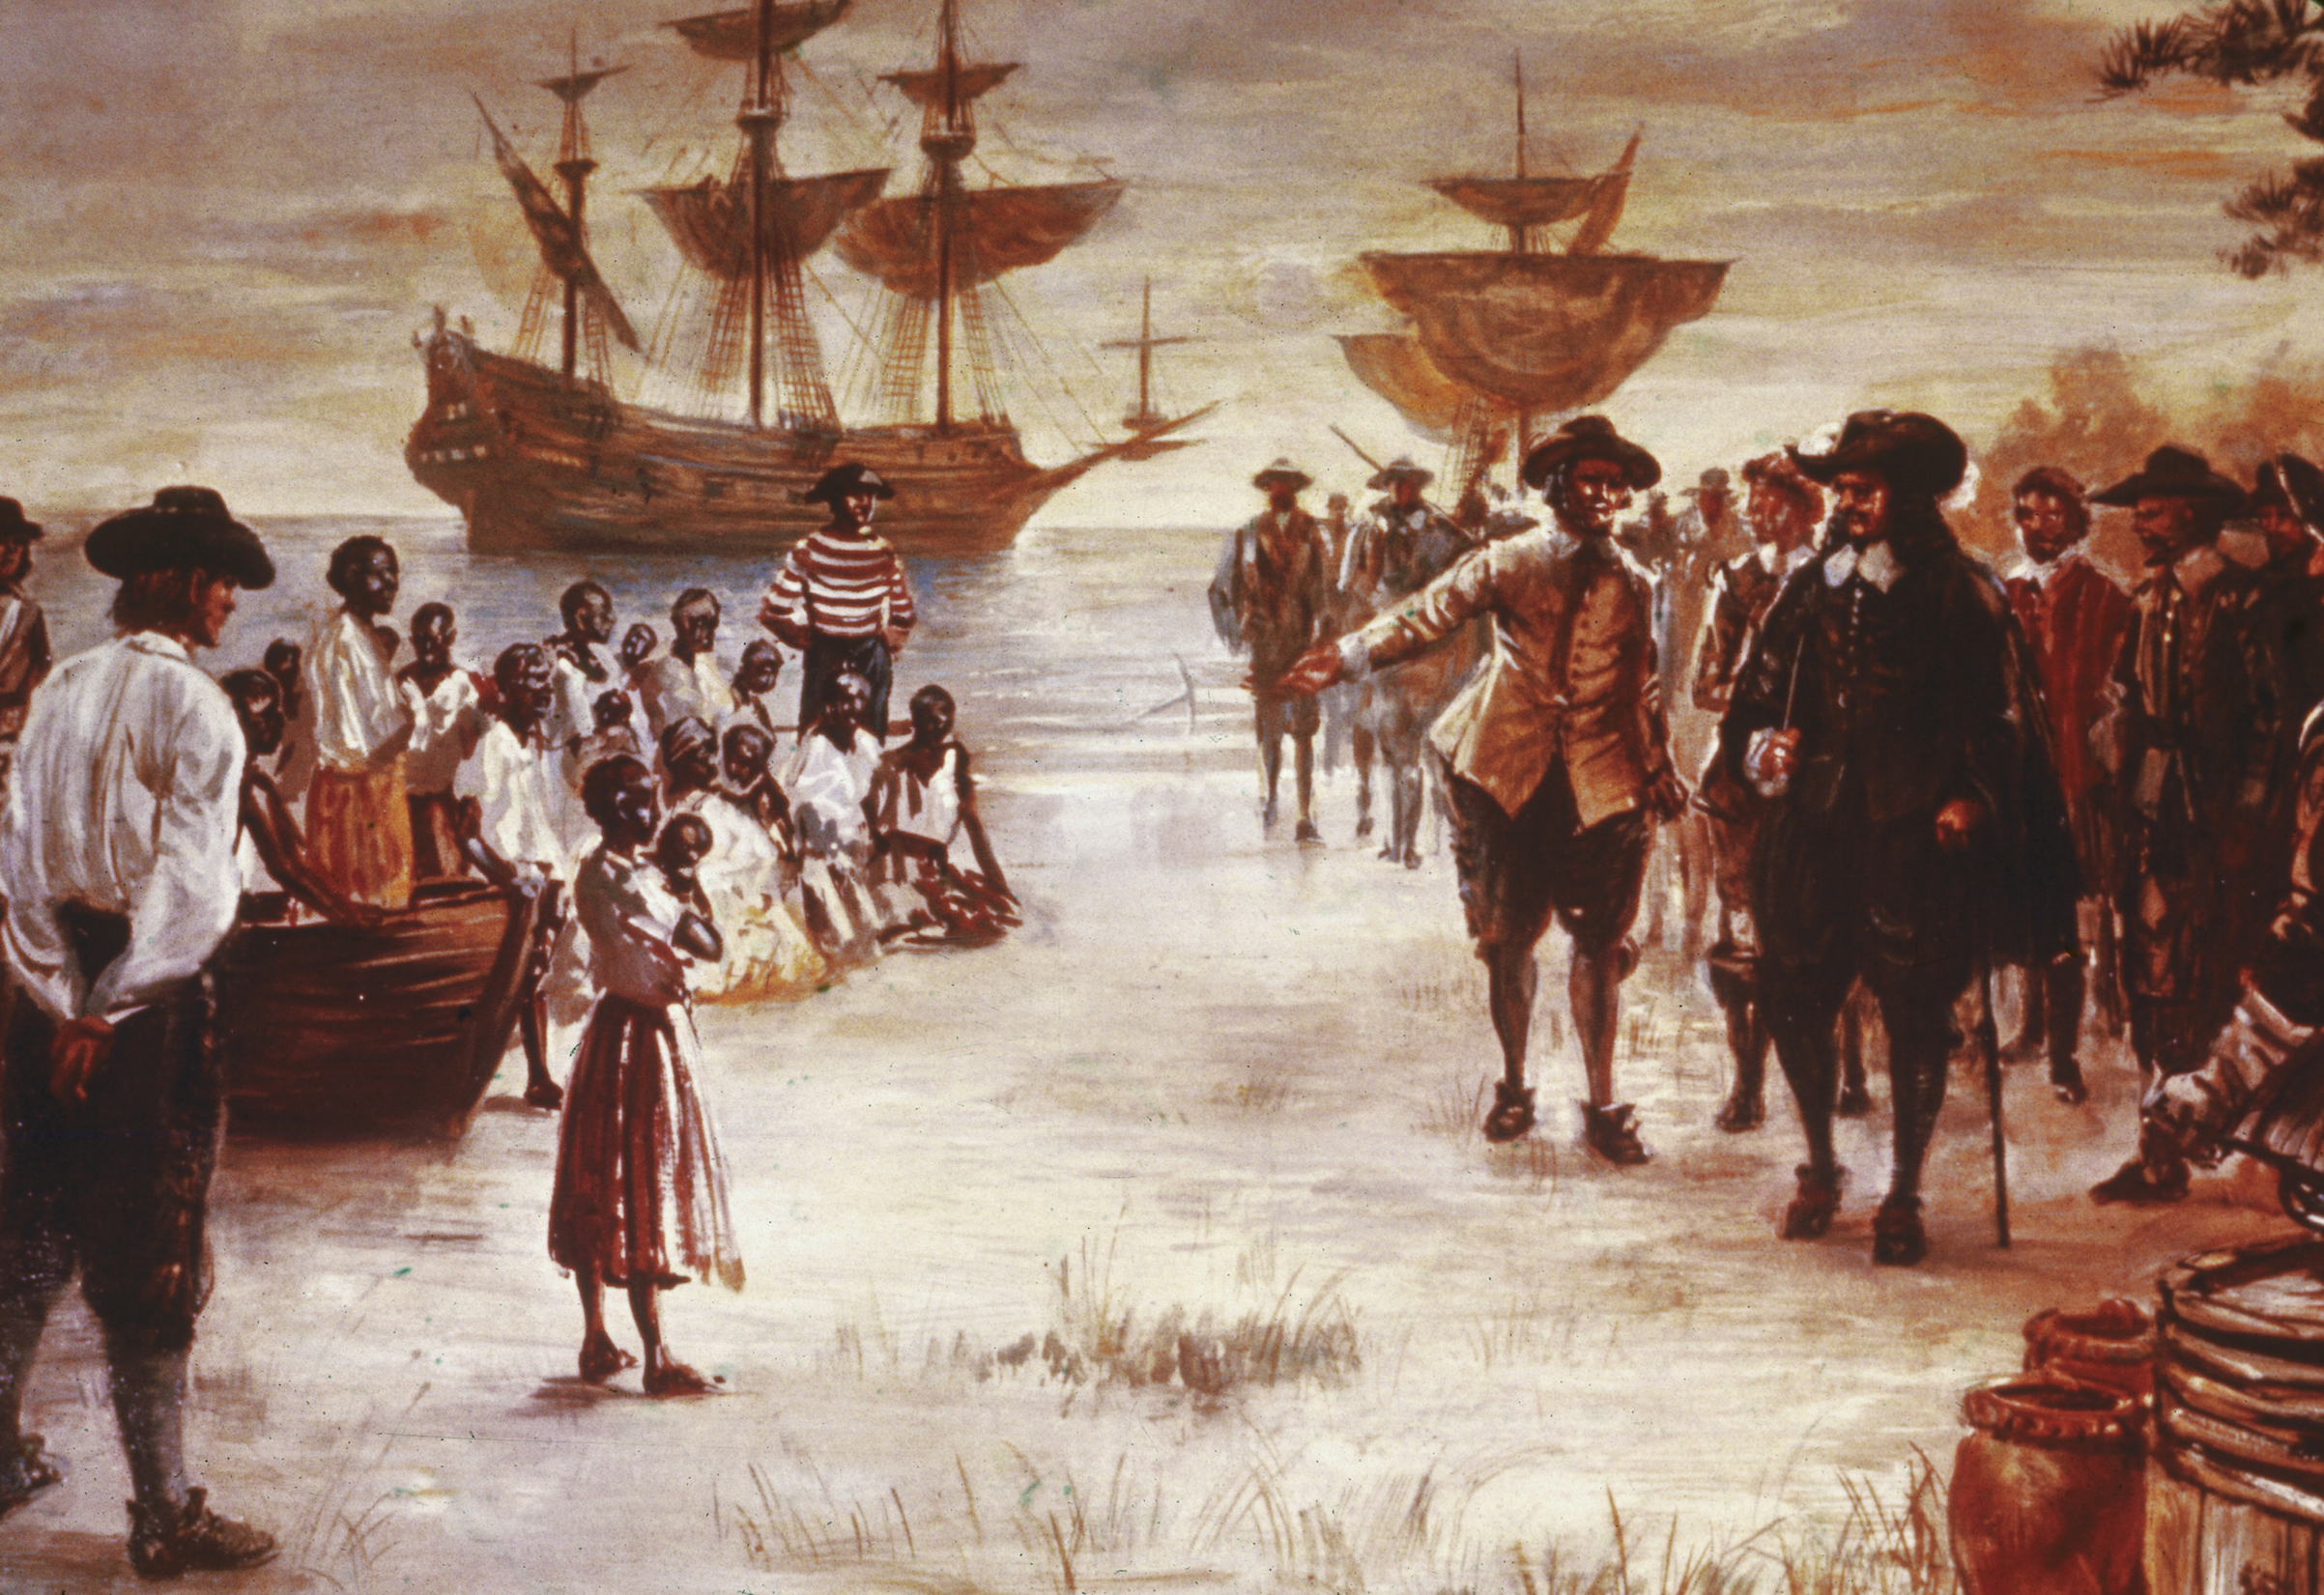 العبودية في الولايات المتحدة الأمريكية، لمحة تاريخية - ما هو تاريخ العبودية في أمريكا وكيف انتهت - إرث العبودية وتاريخها وتأثيرها في التاريخ الأمريكي 